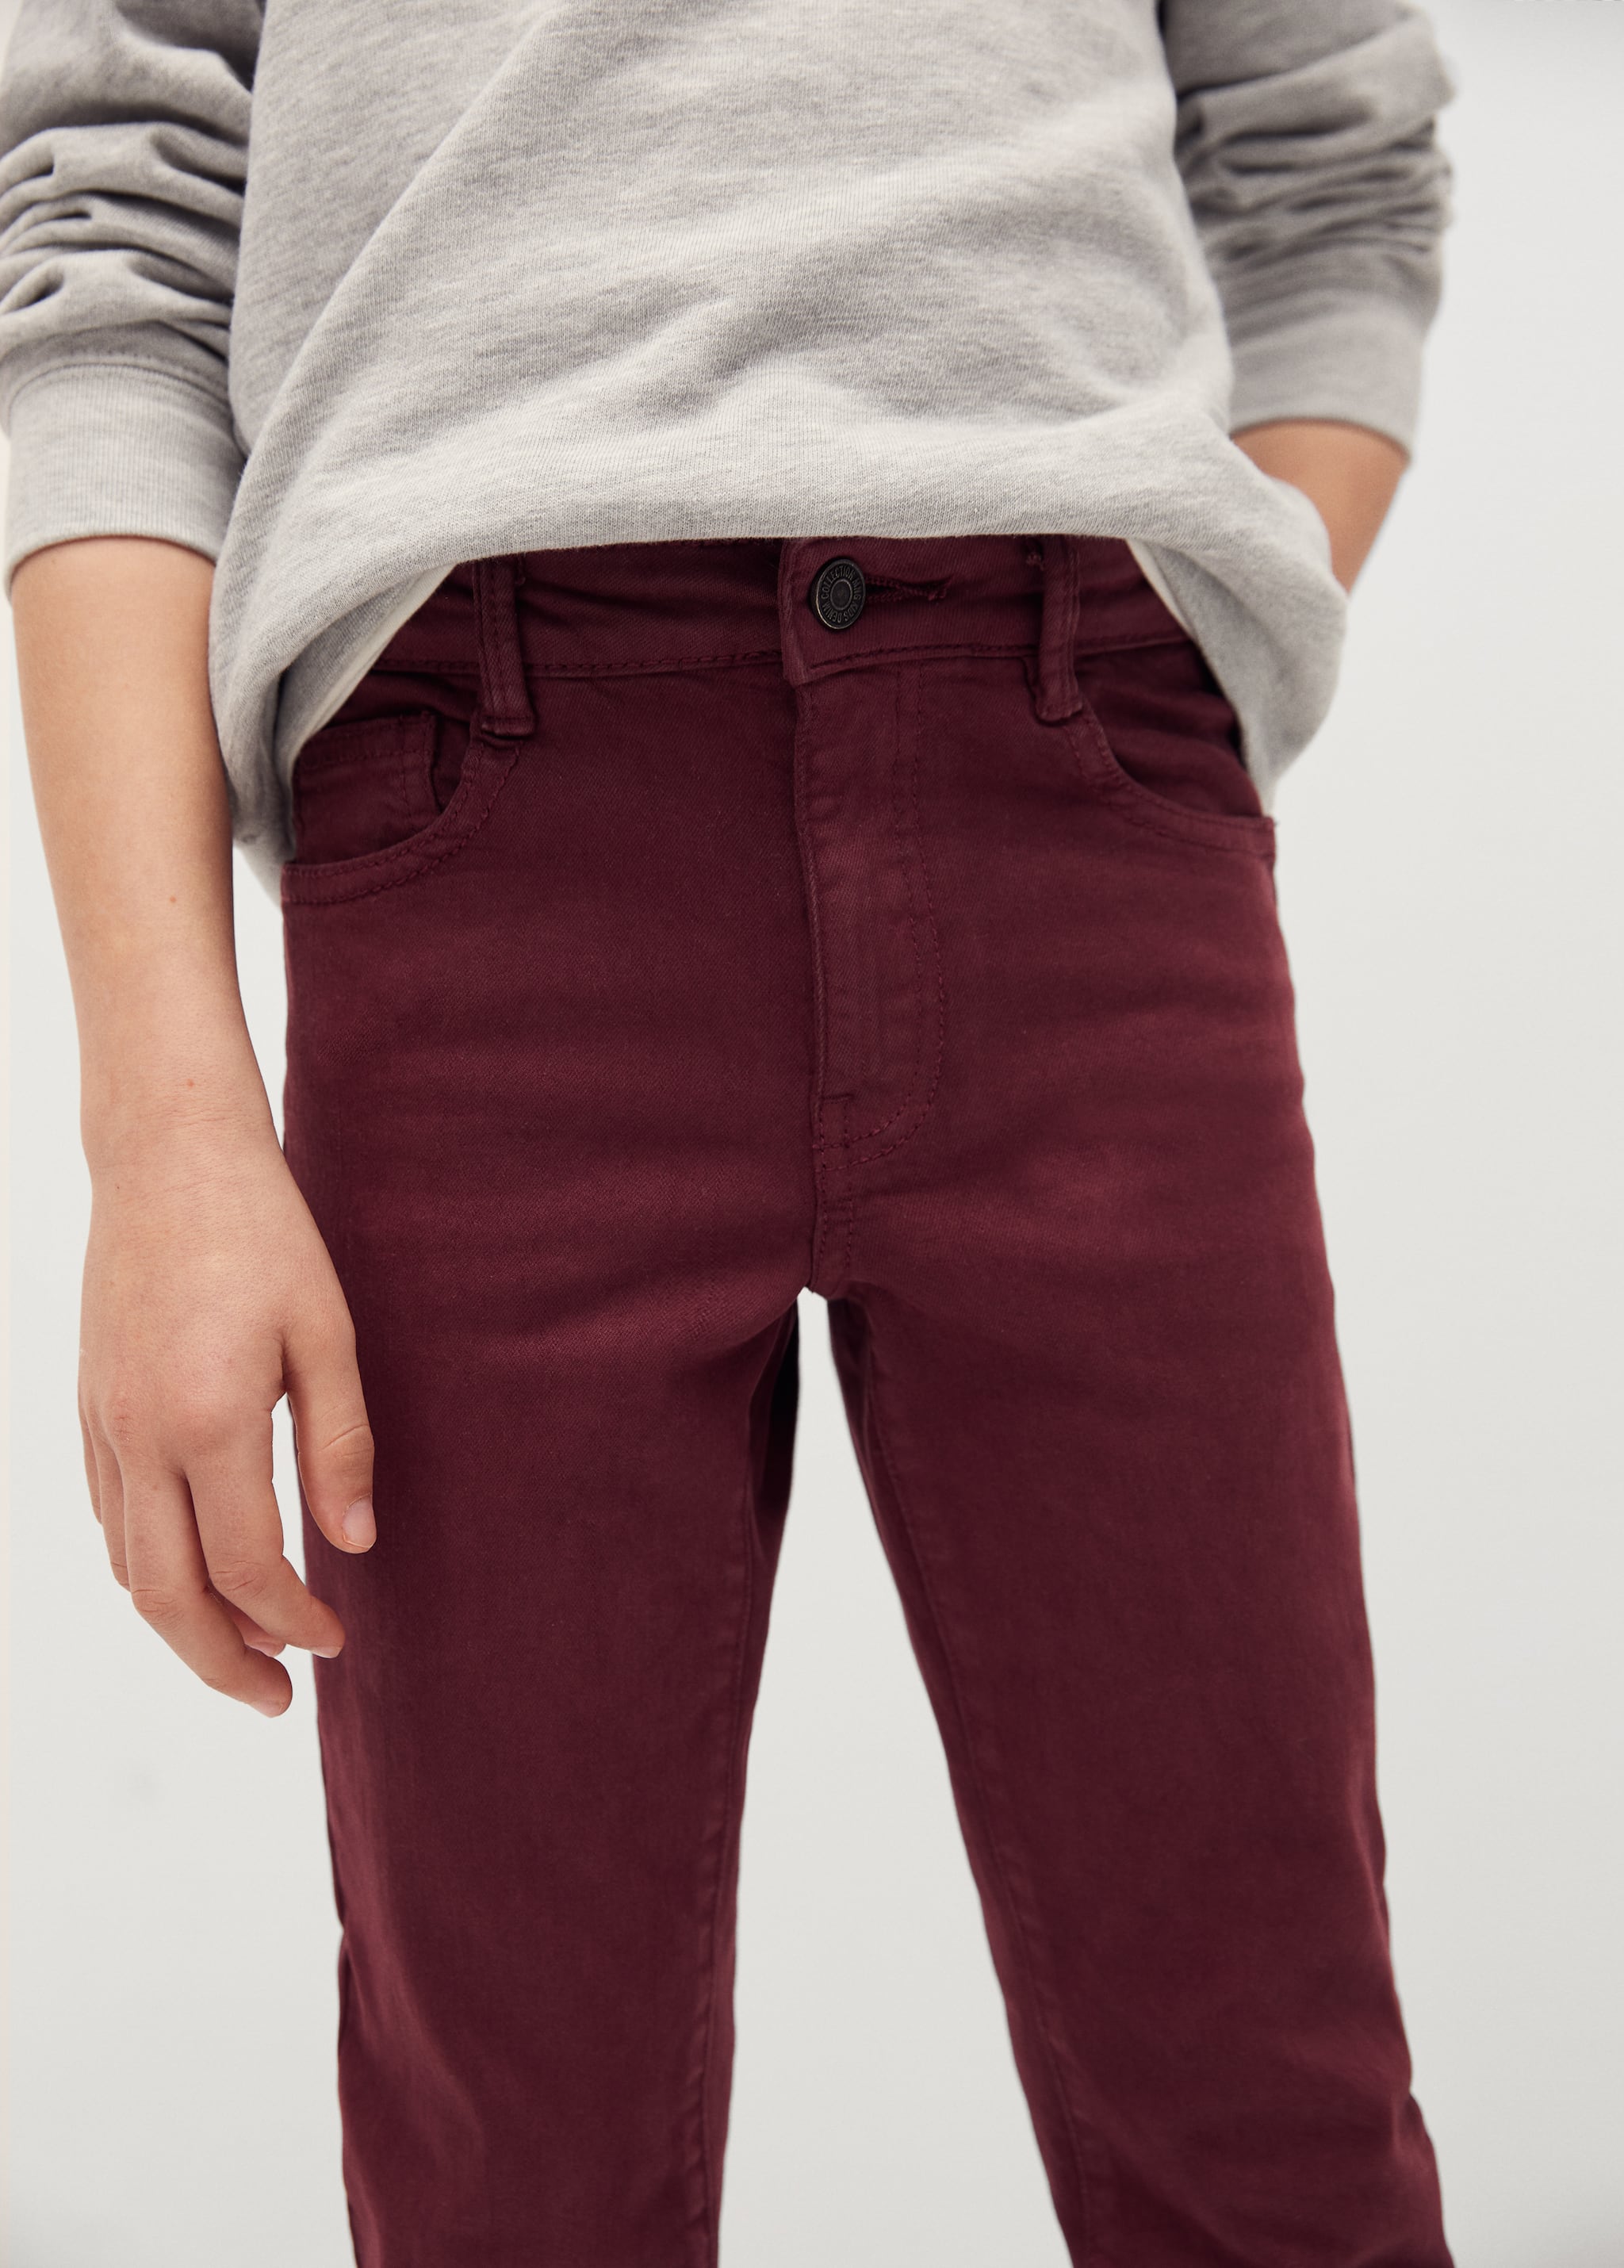 Pantalon slim fit coton - Plan moyen